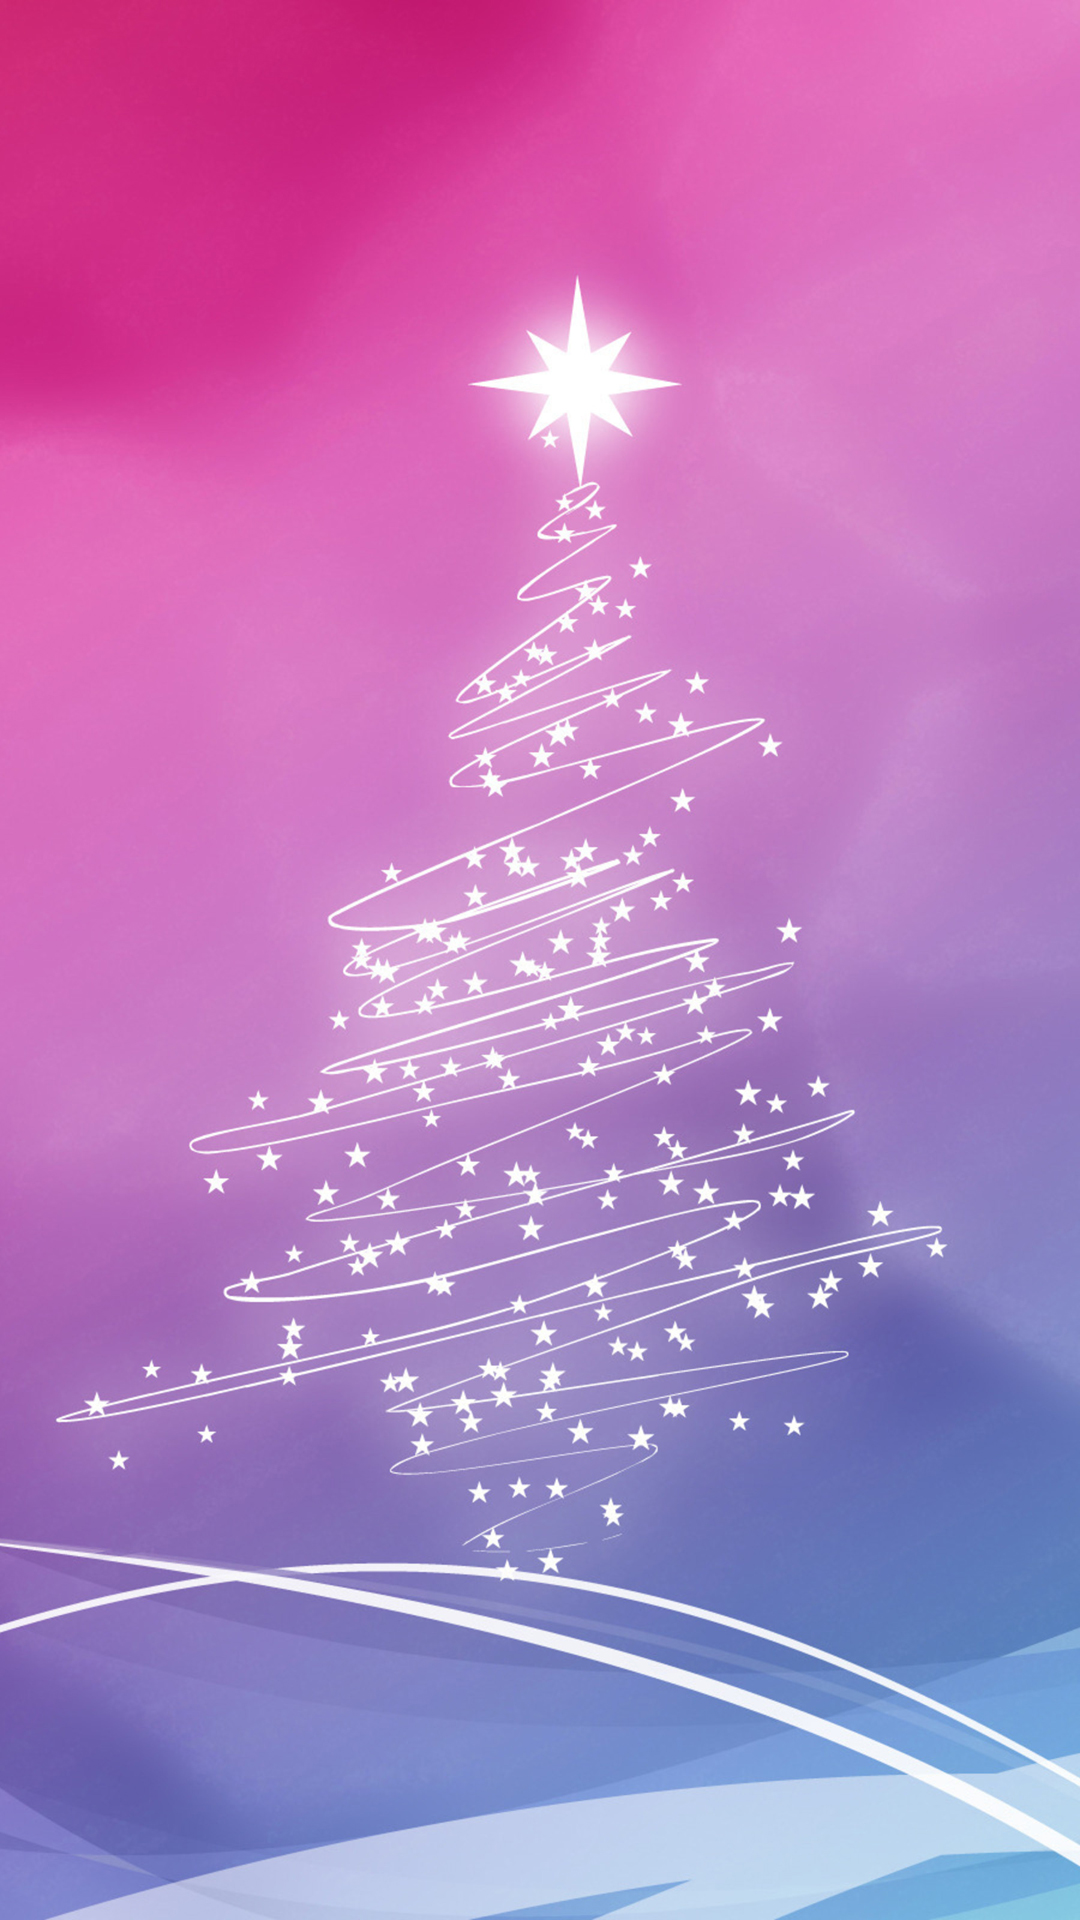 Sfondi Natalizi Hd Iphone 6.Christmas Tree Iphone Wallpaper Hd